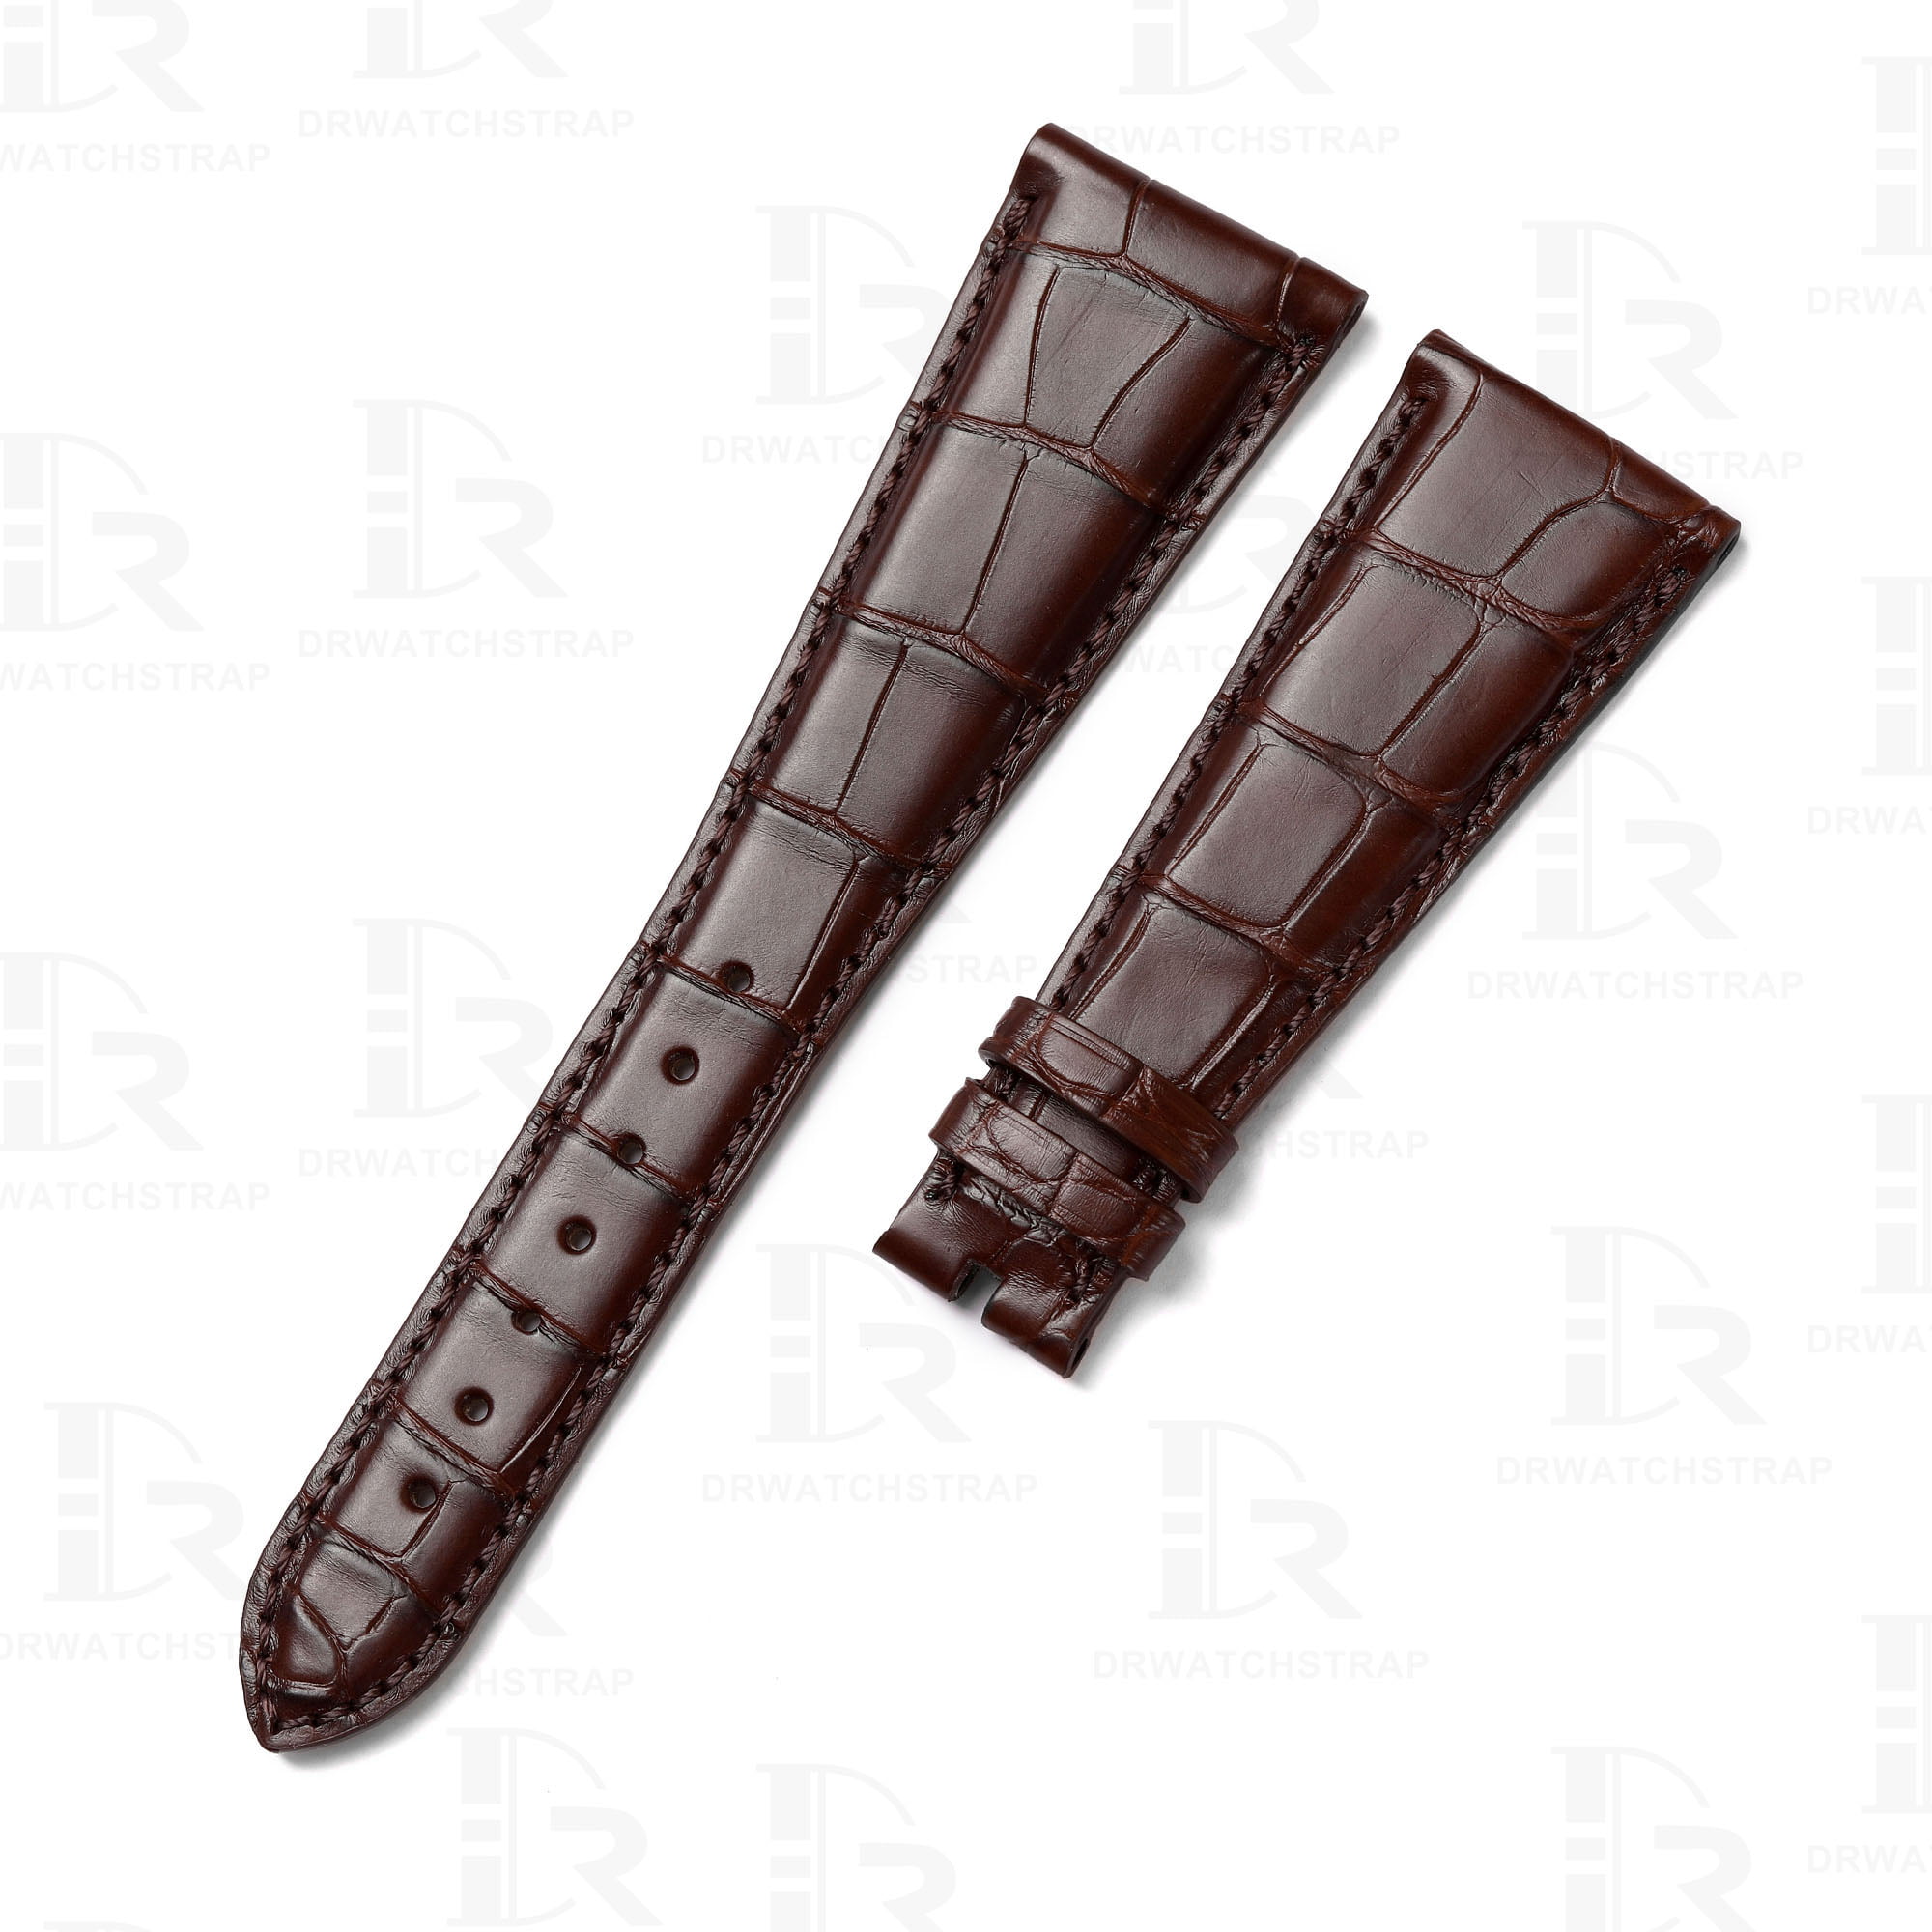 Brown alligator leather watch strap